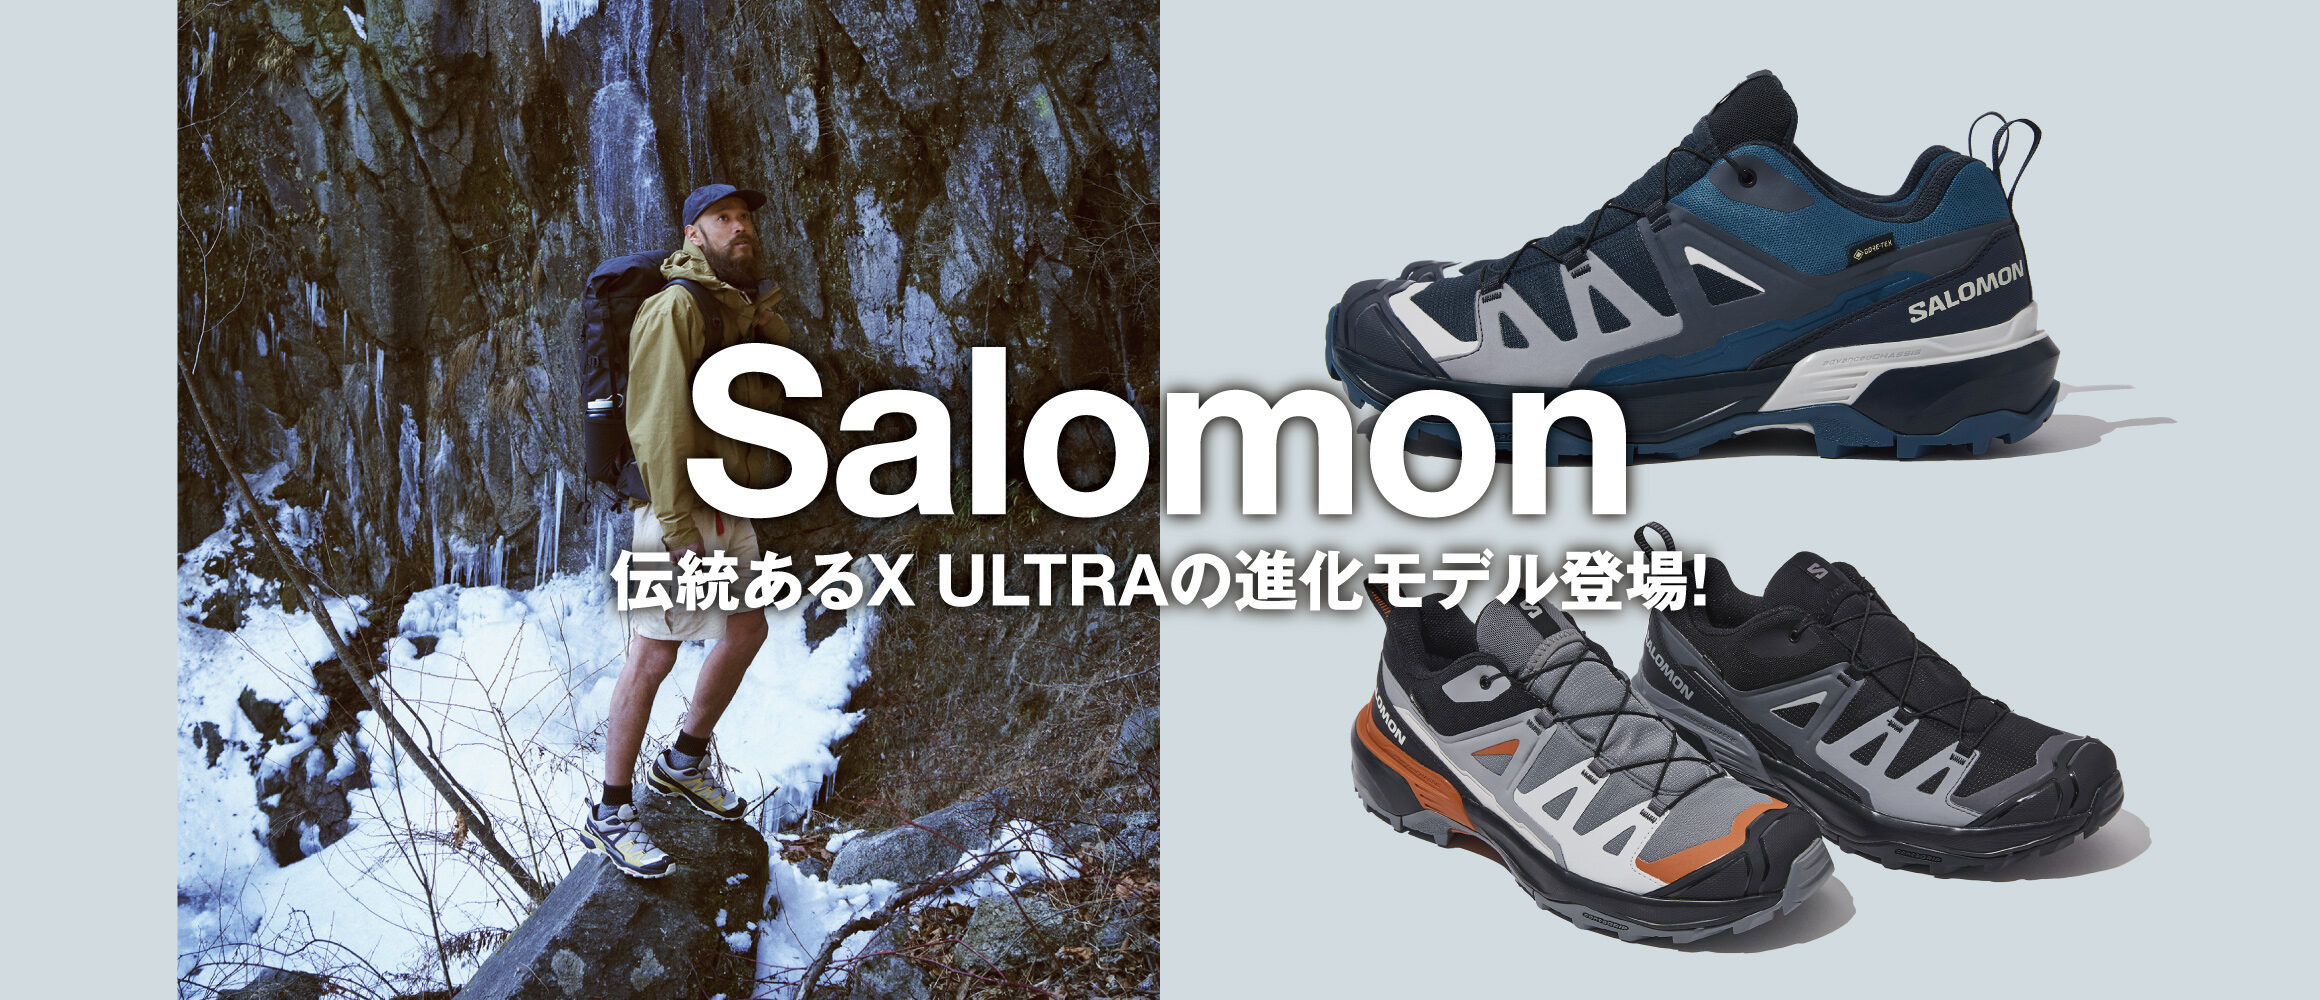 実績十分なサロモン「X ULTRAシリーズ」の最新鋭モデルがデビュー!!